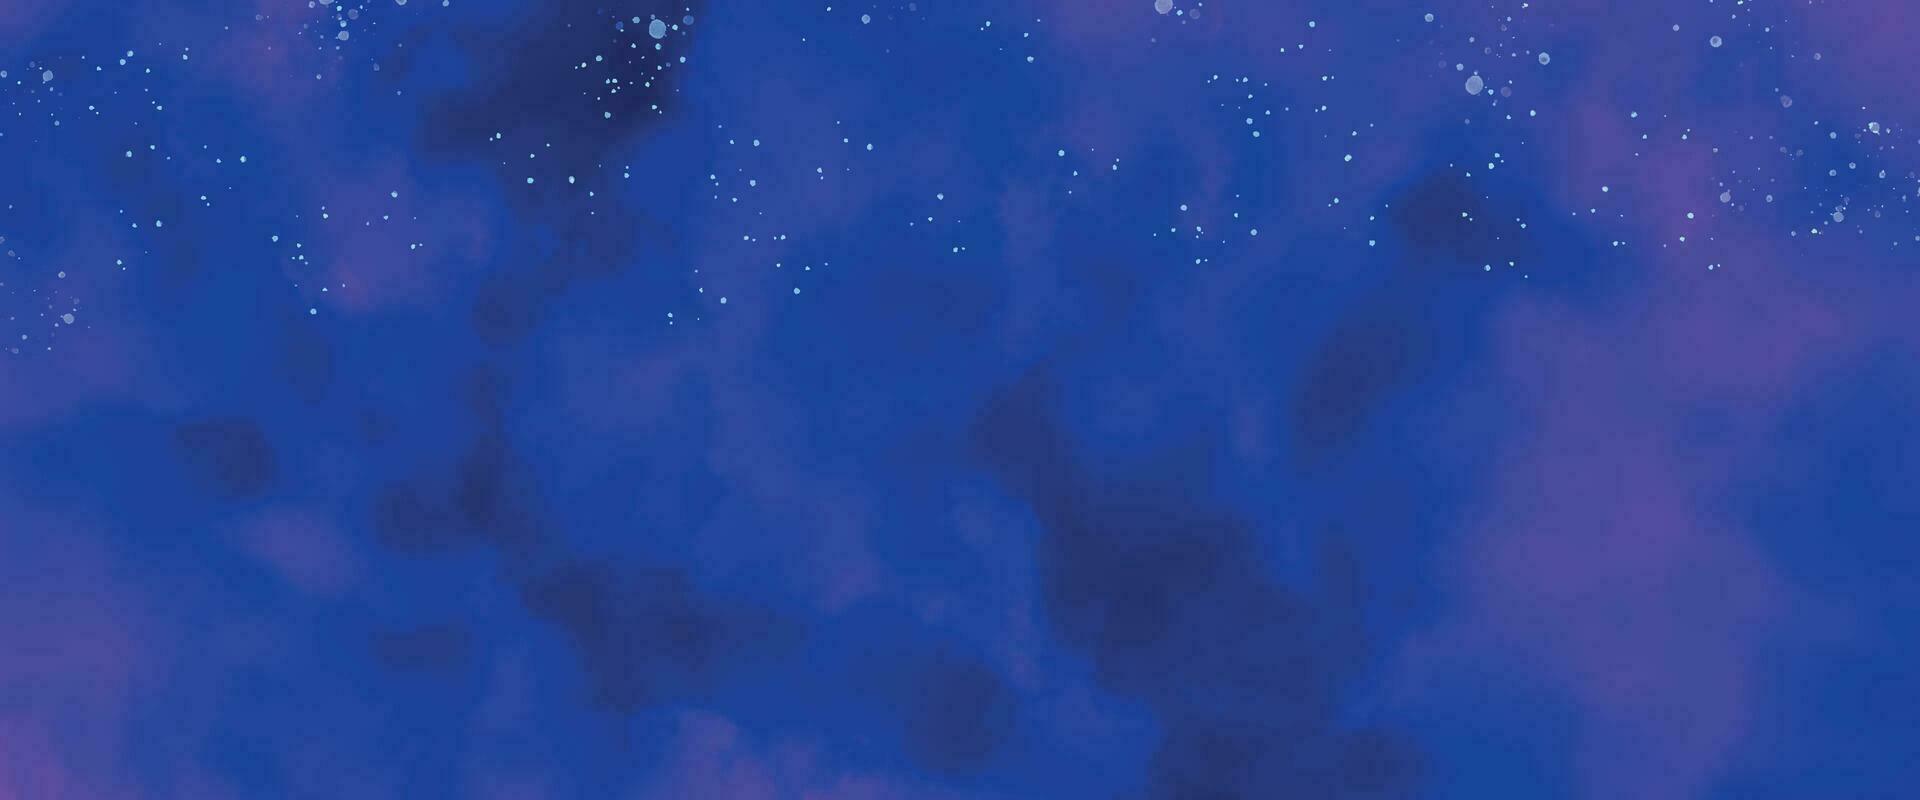 künstlerischer handgemalter mehrschichtiger dunkelblauer hintergrund. dunkelblauer nebel funkelt lila sternuniversum im weltraum horizontale galaxie im weltraum. marineblaue aquarell- und papierstruktur. Wasser waschen vektor